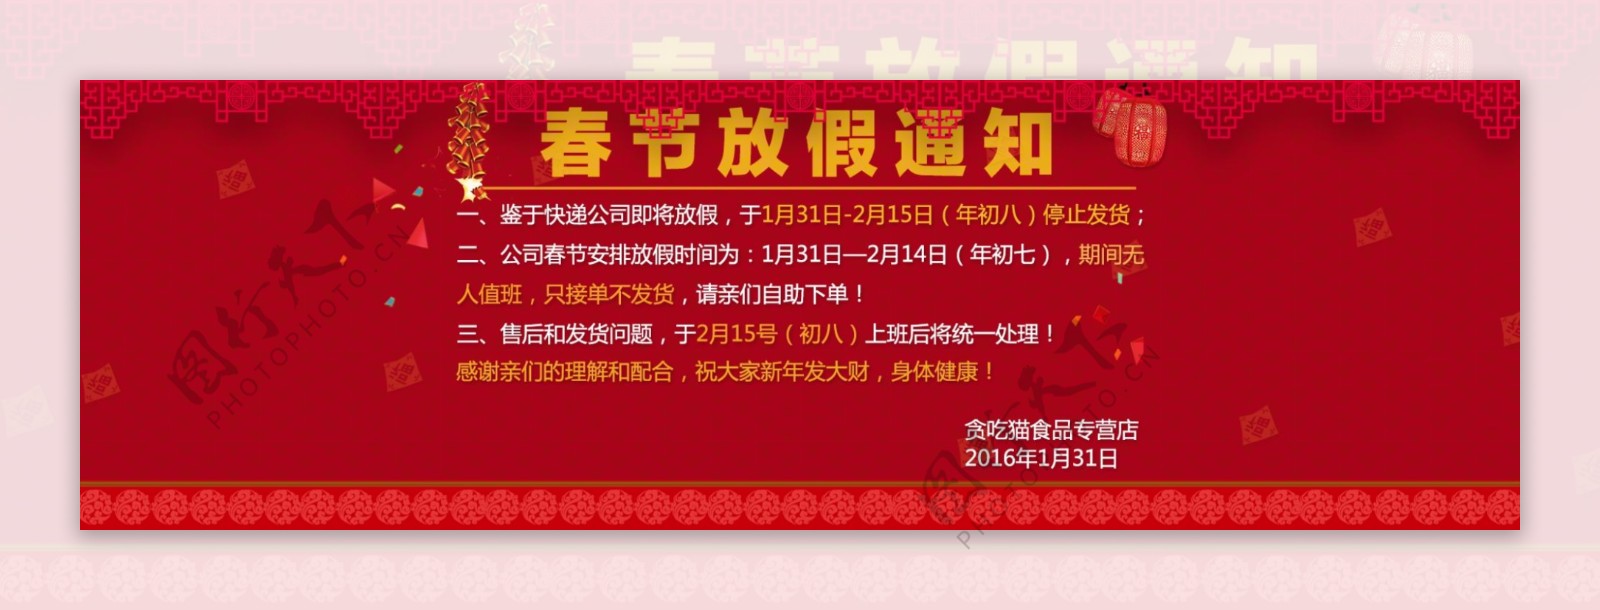 2016年春节放假通知公告